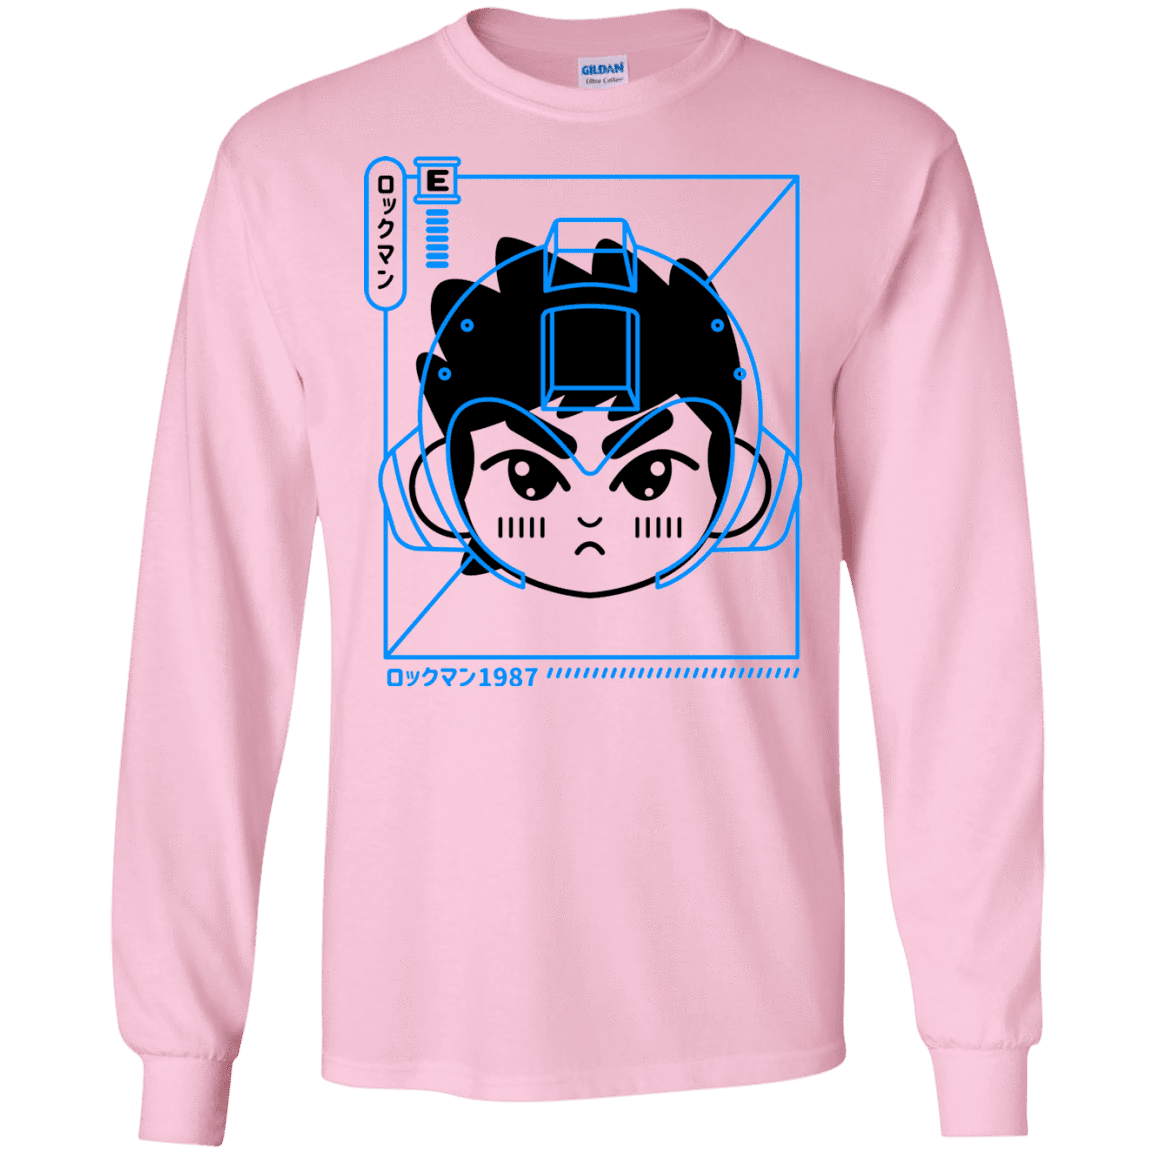 T-Shirts Light Pink / S Cyber Helmet Rokkuman Men's Long Sleeve T-Shirt